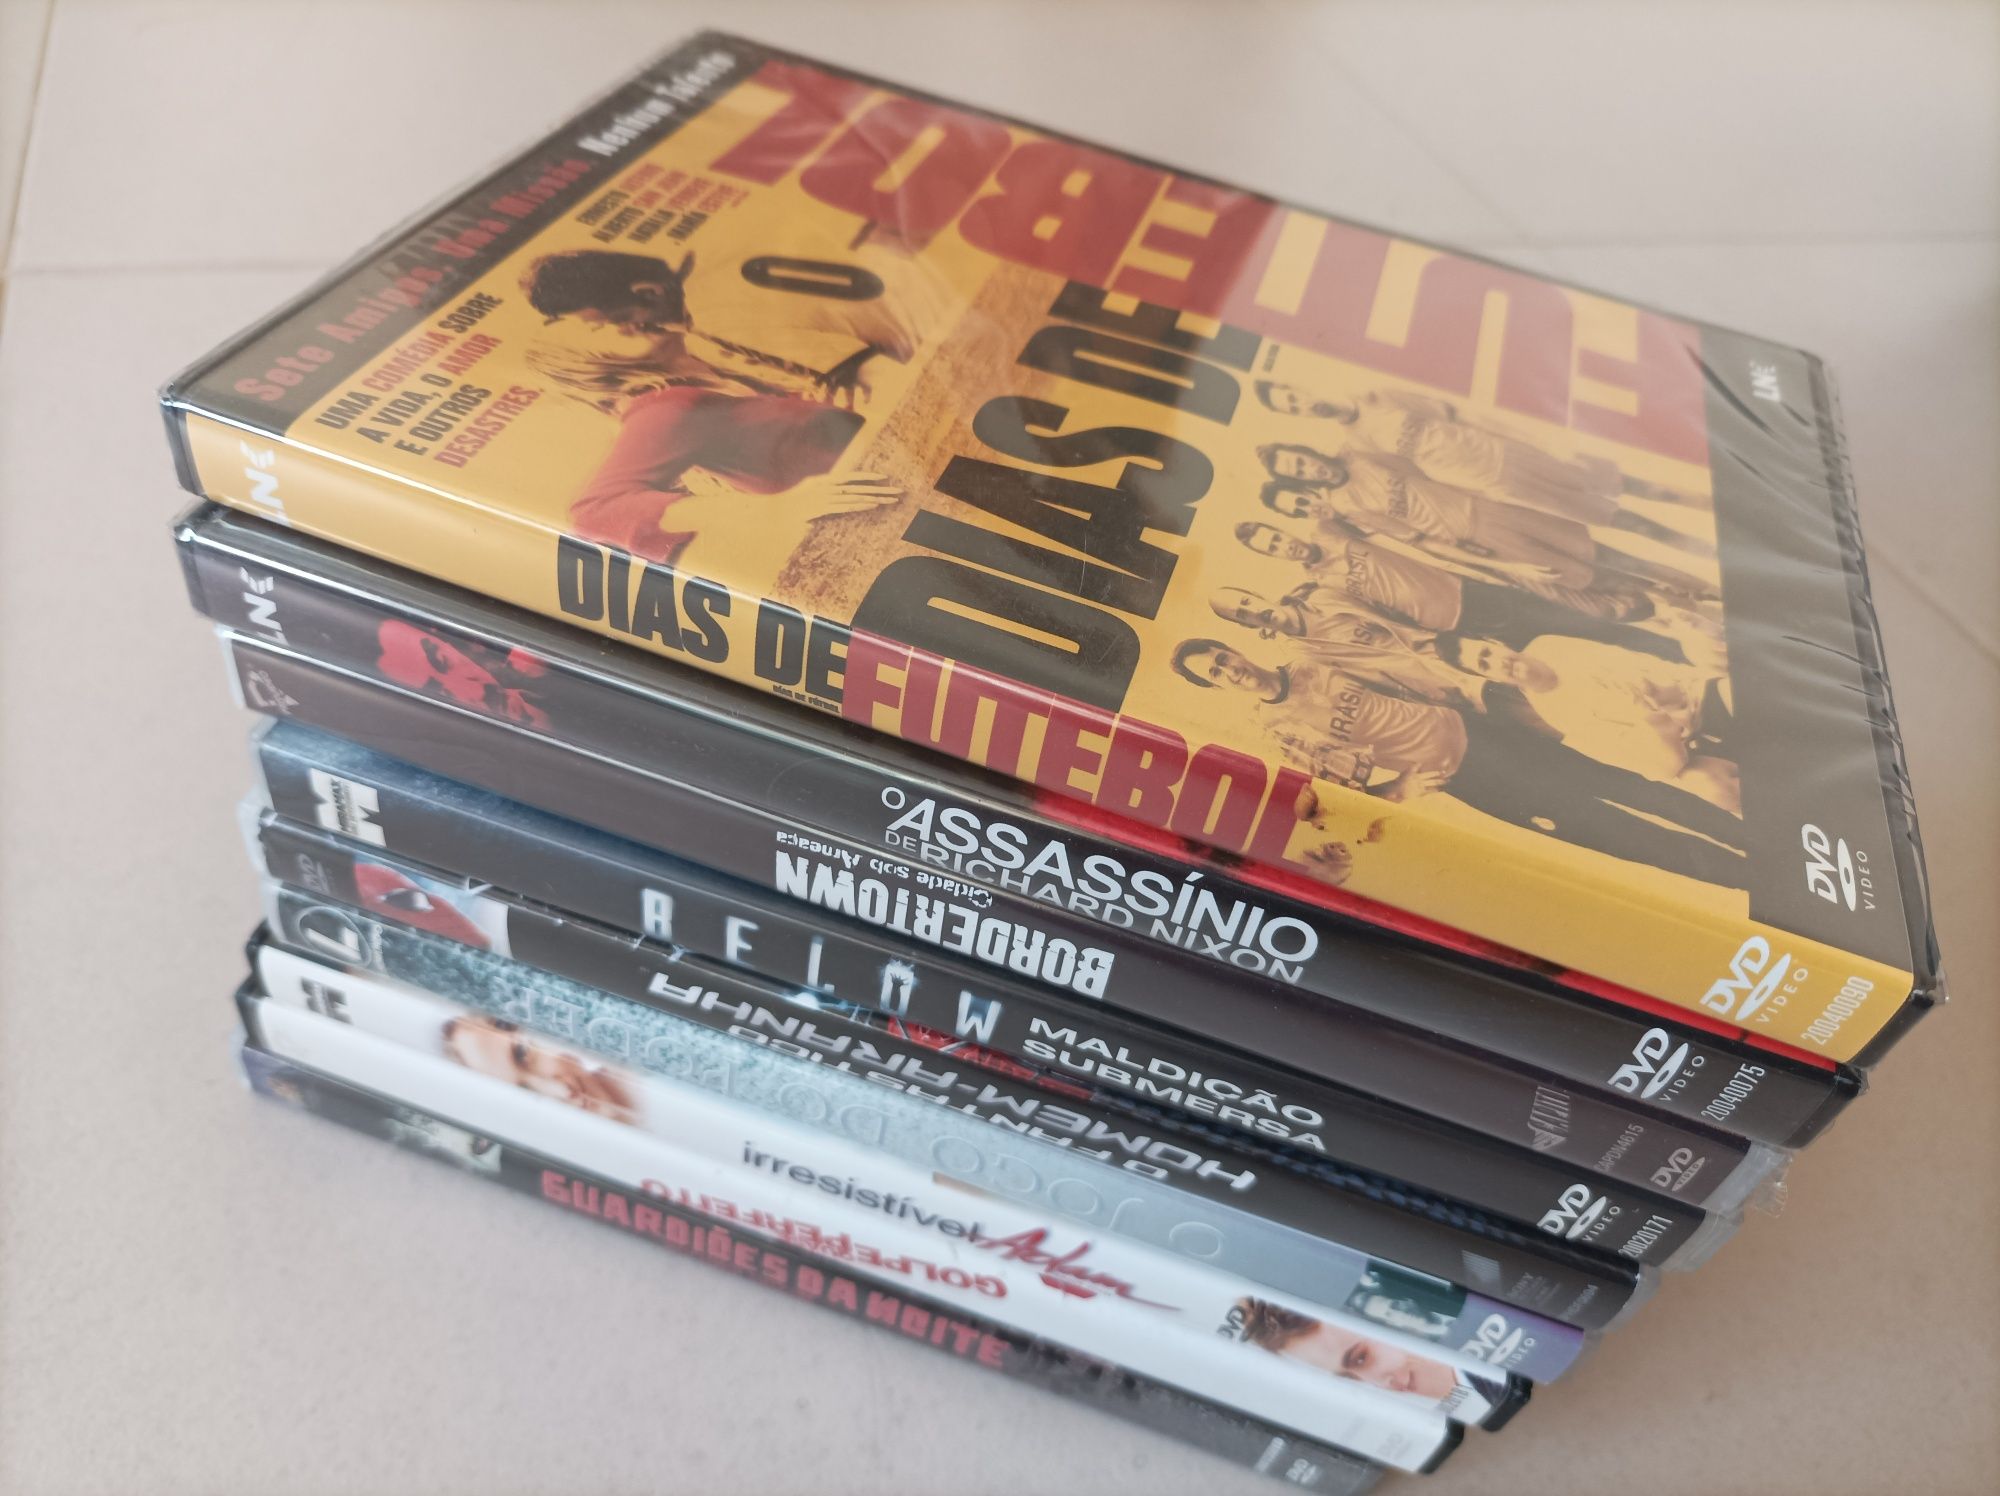 Lote de 8 DVDs originais (Filmes de Acção)